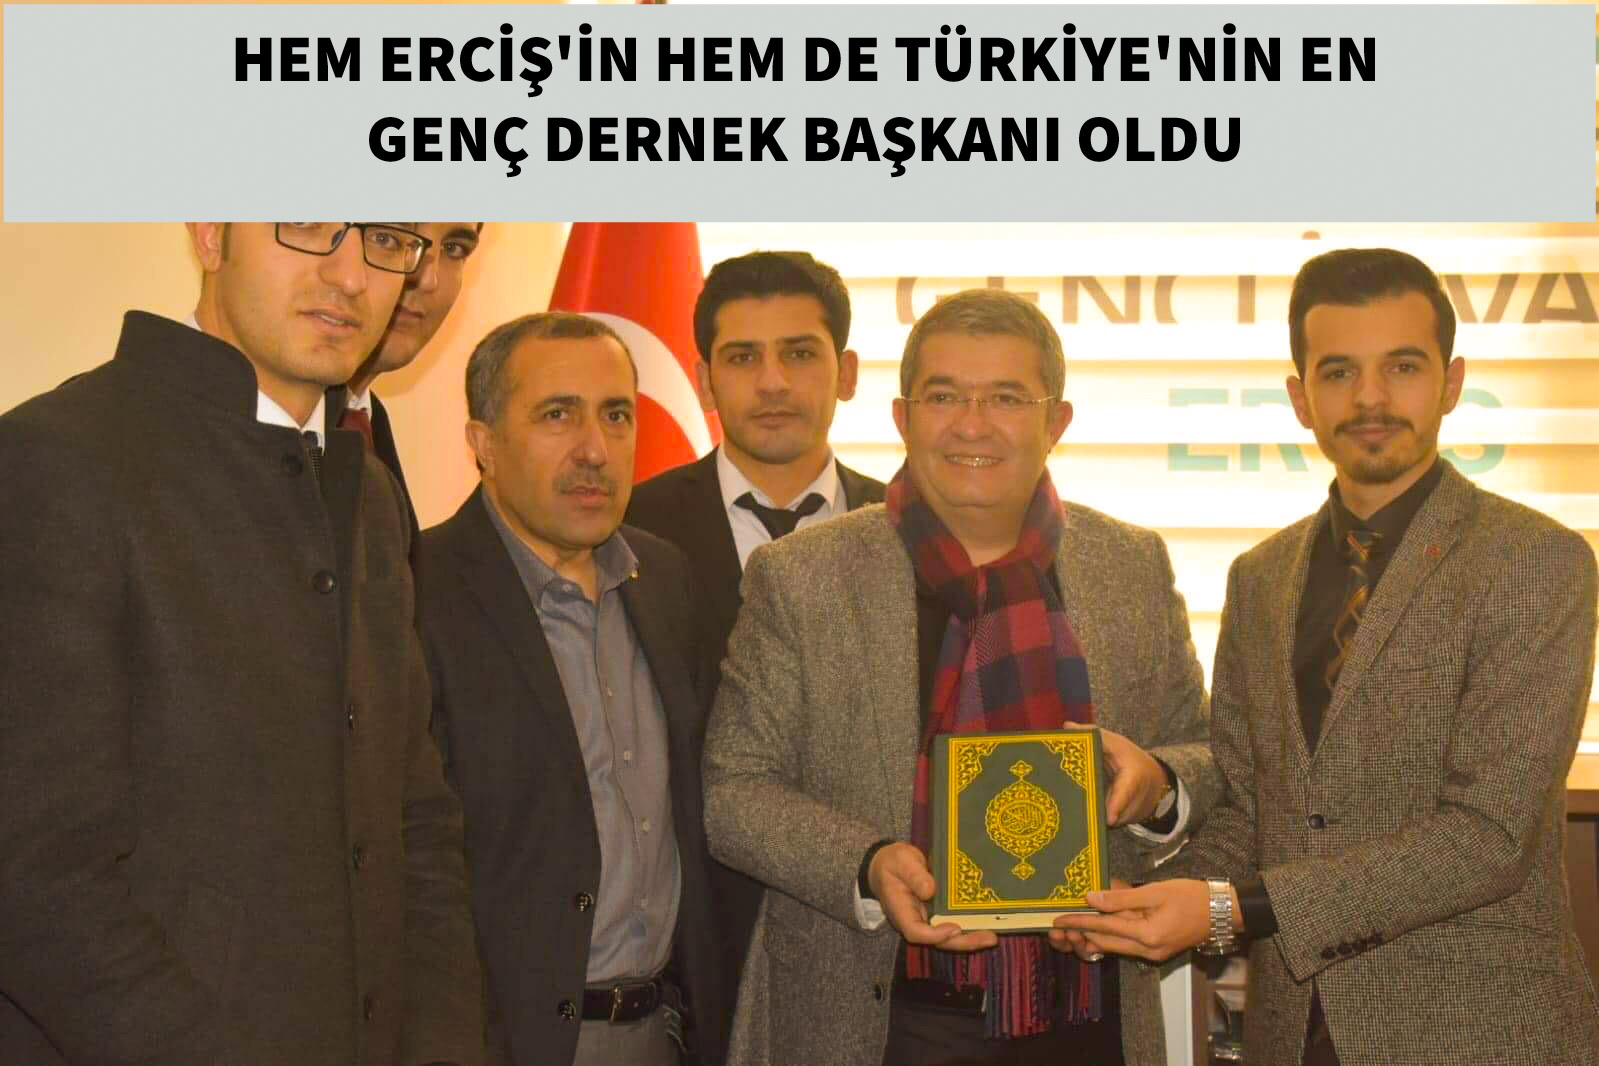 Hem Erciş'in hem de Türkiye'nin en genç dernek başkanı oldu